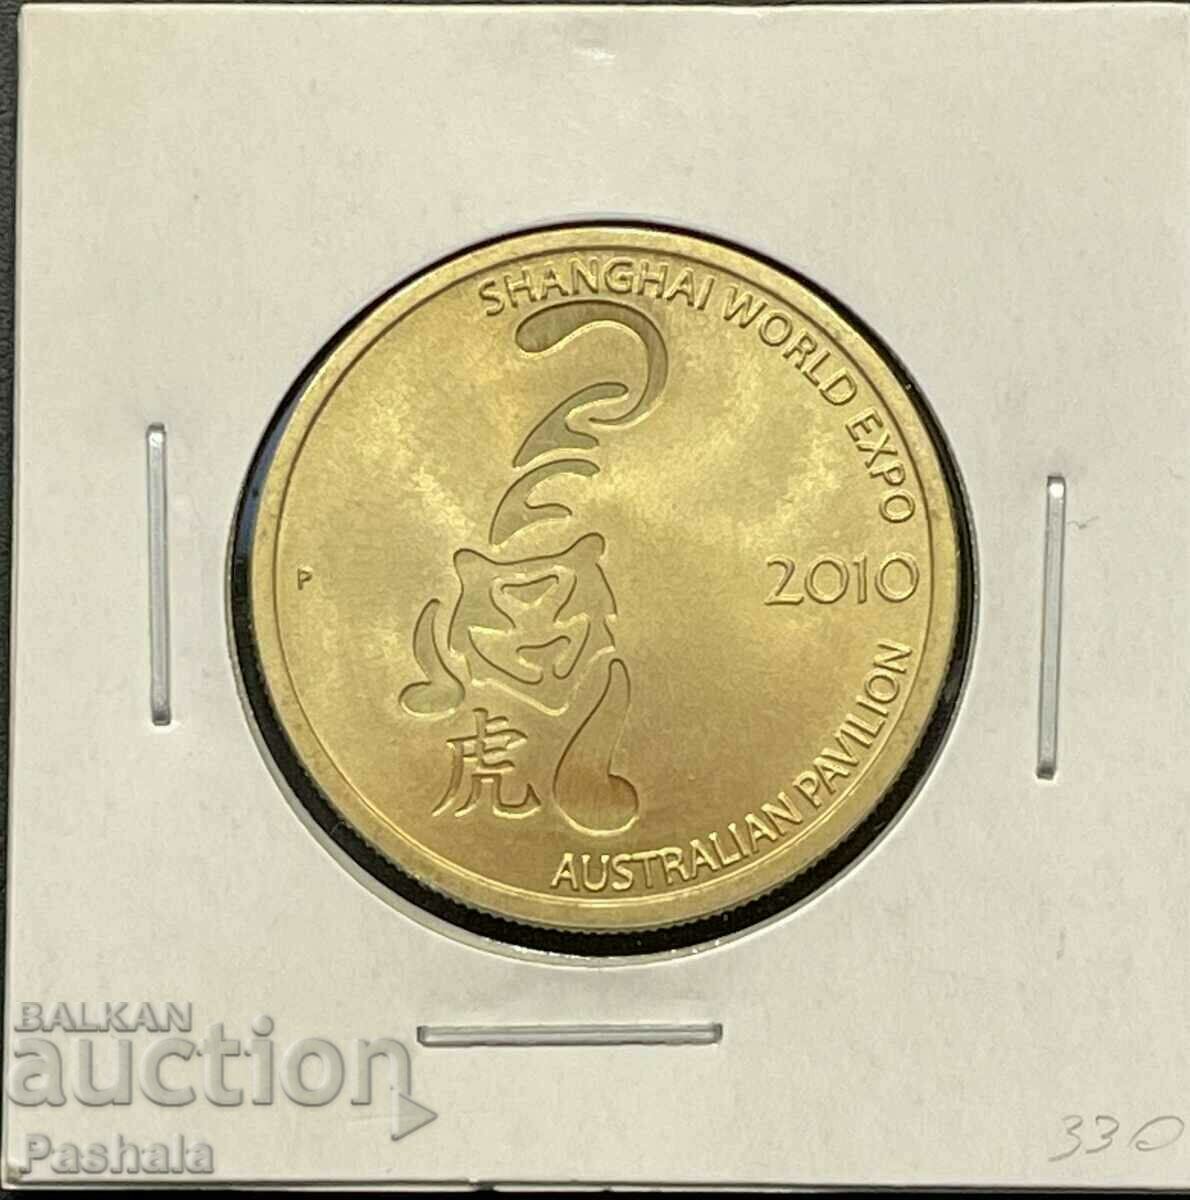 Australia $1 2010